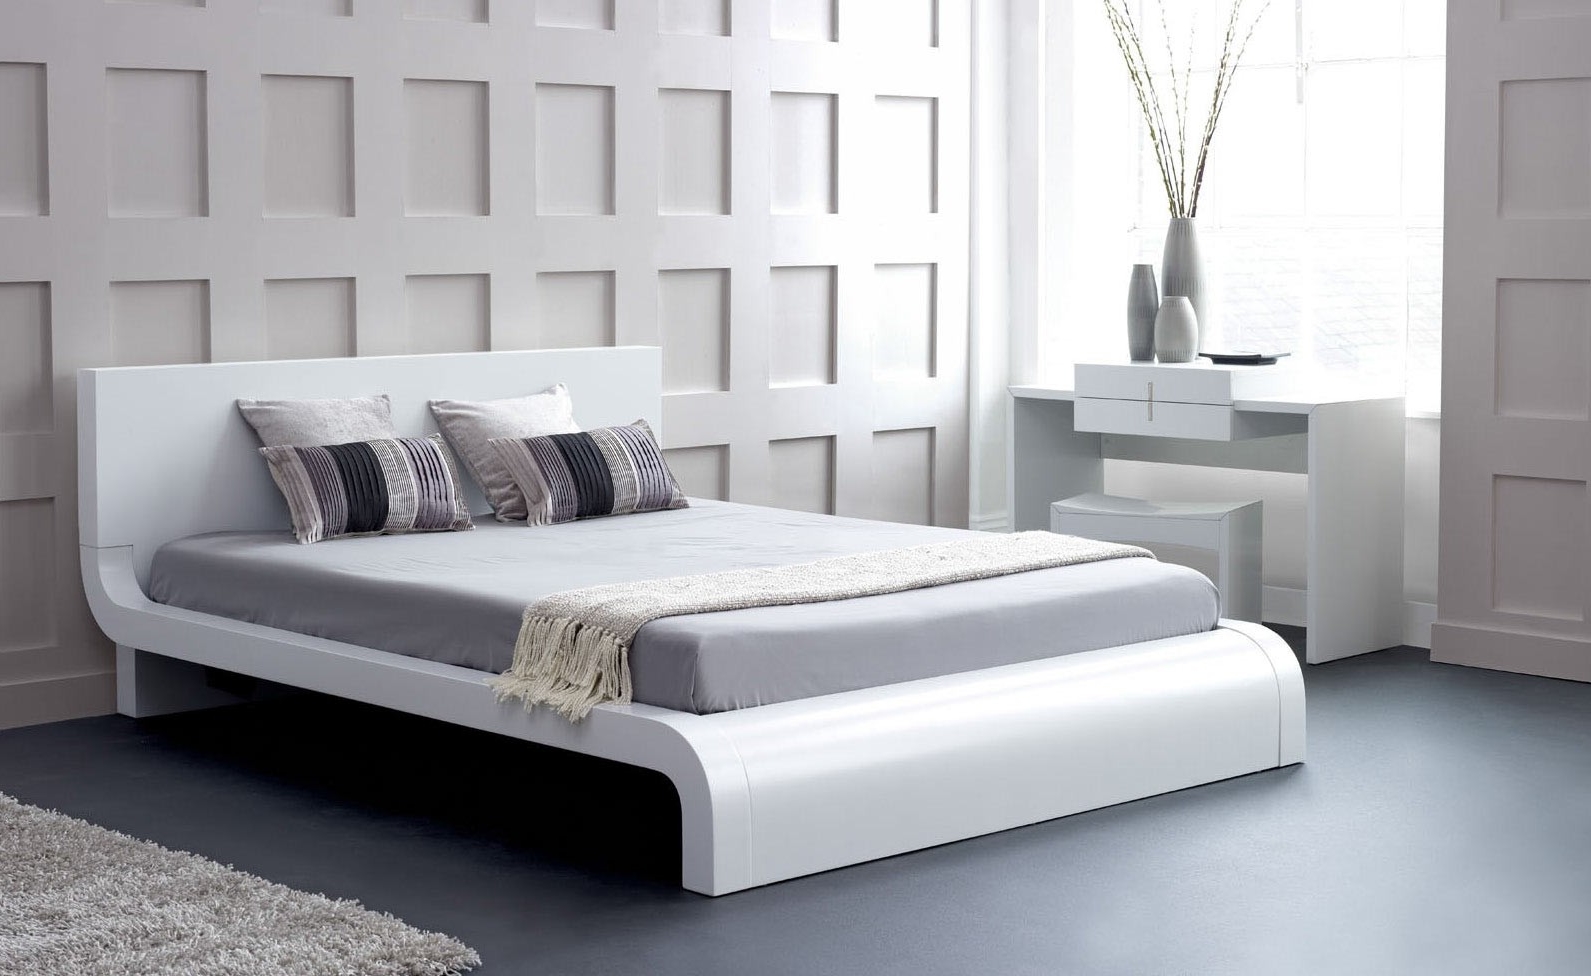 Các mẫu giường ngủ màu trắng siêu hiện đại và sang trọng